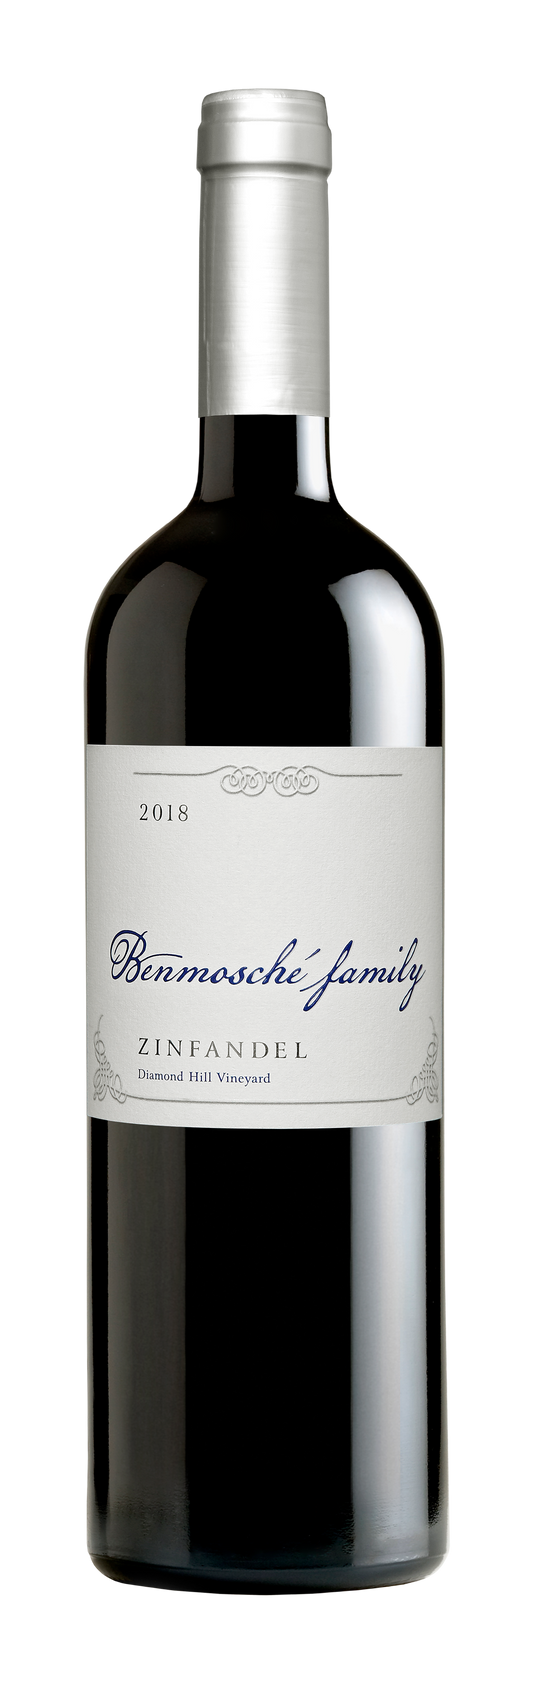 Benmosche Family Zinfandel 2018